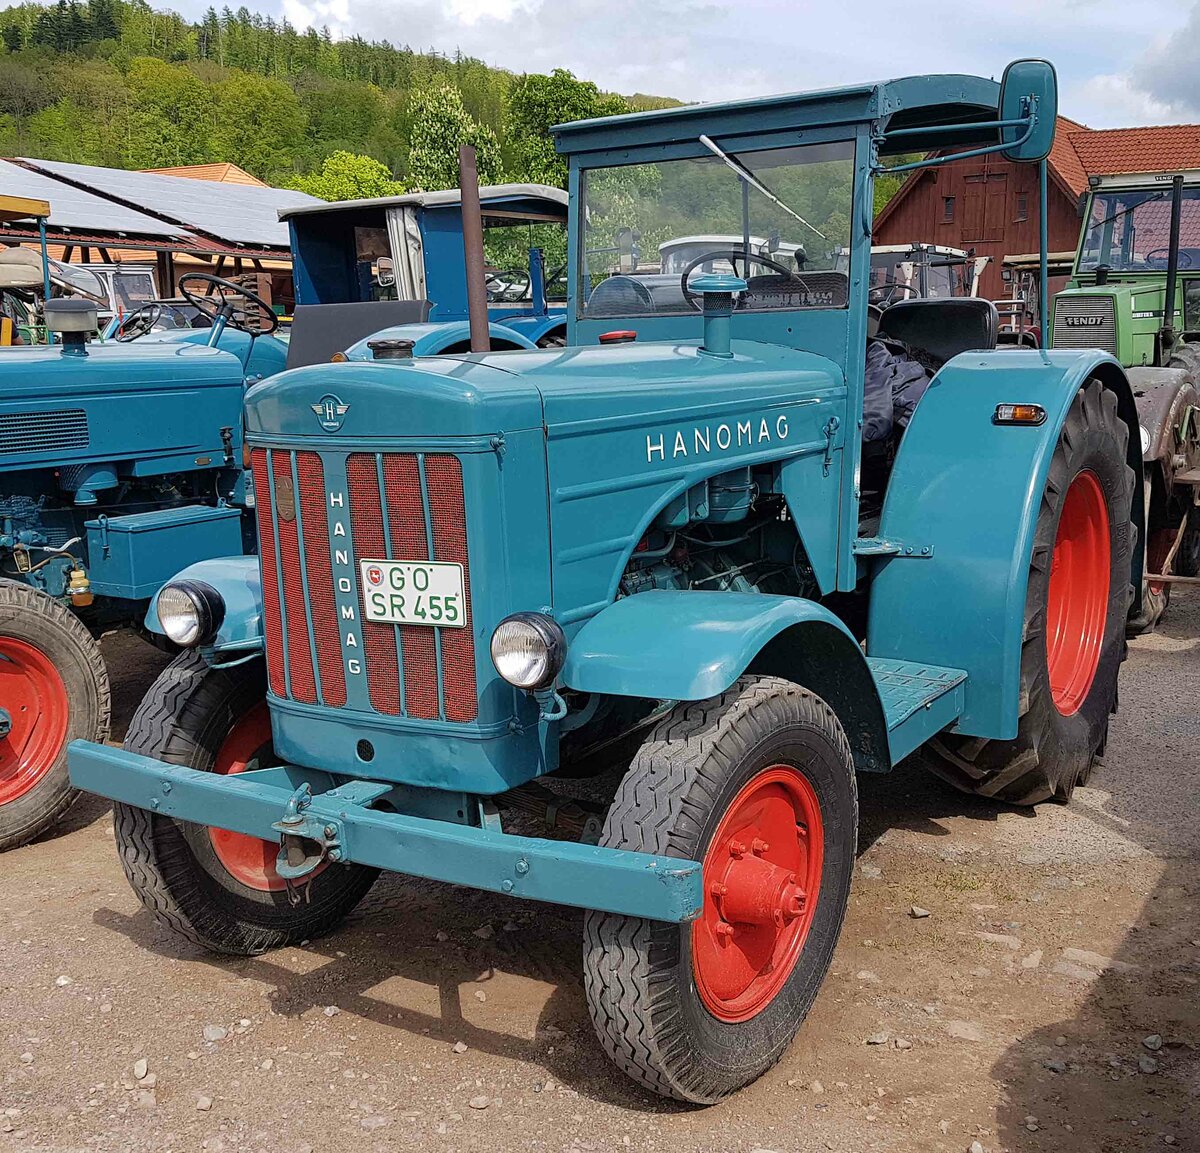 =Hanomag 455, steht auf dem Ausstellungsgelände der Traktorfreunde Wiershausen am Klostergut Hilwartshausen, 05-2023